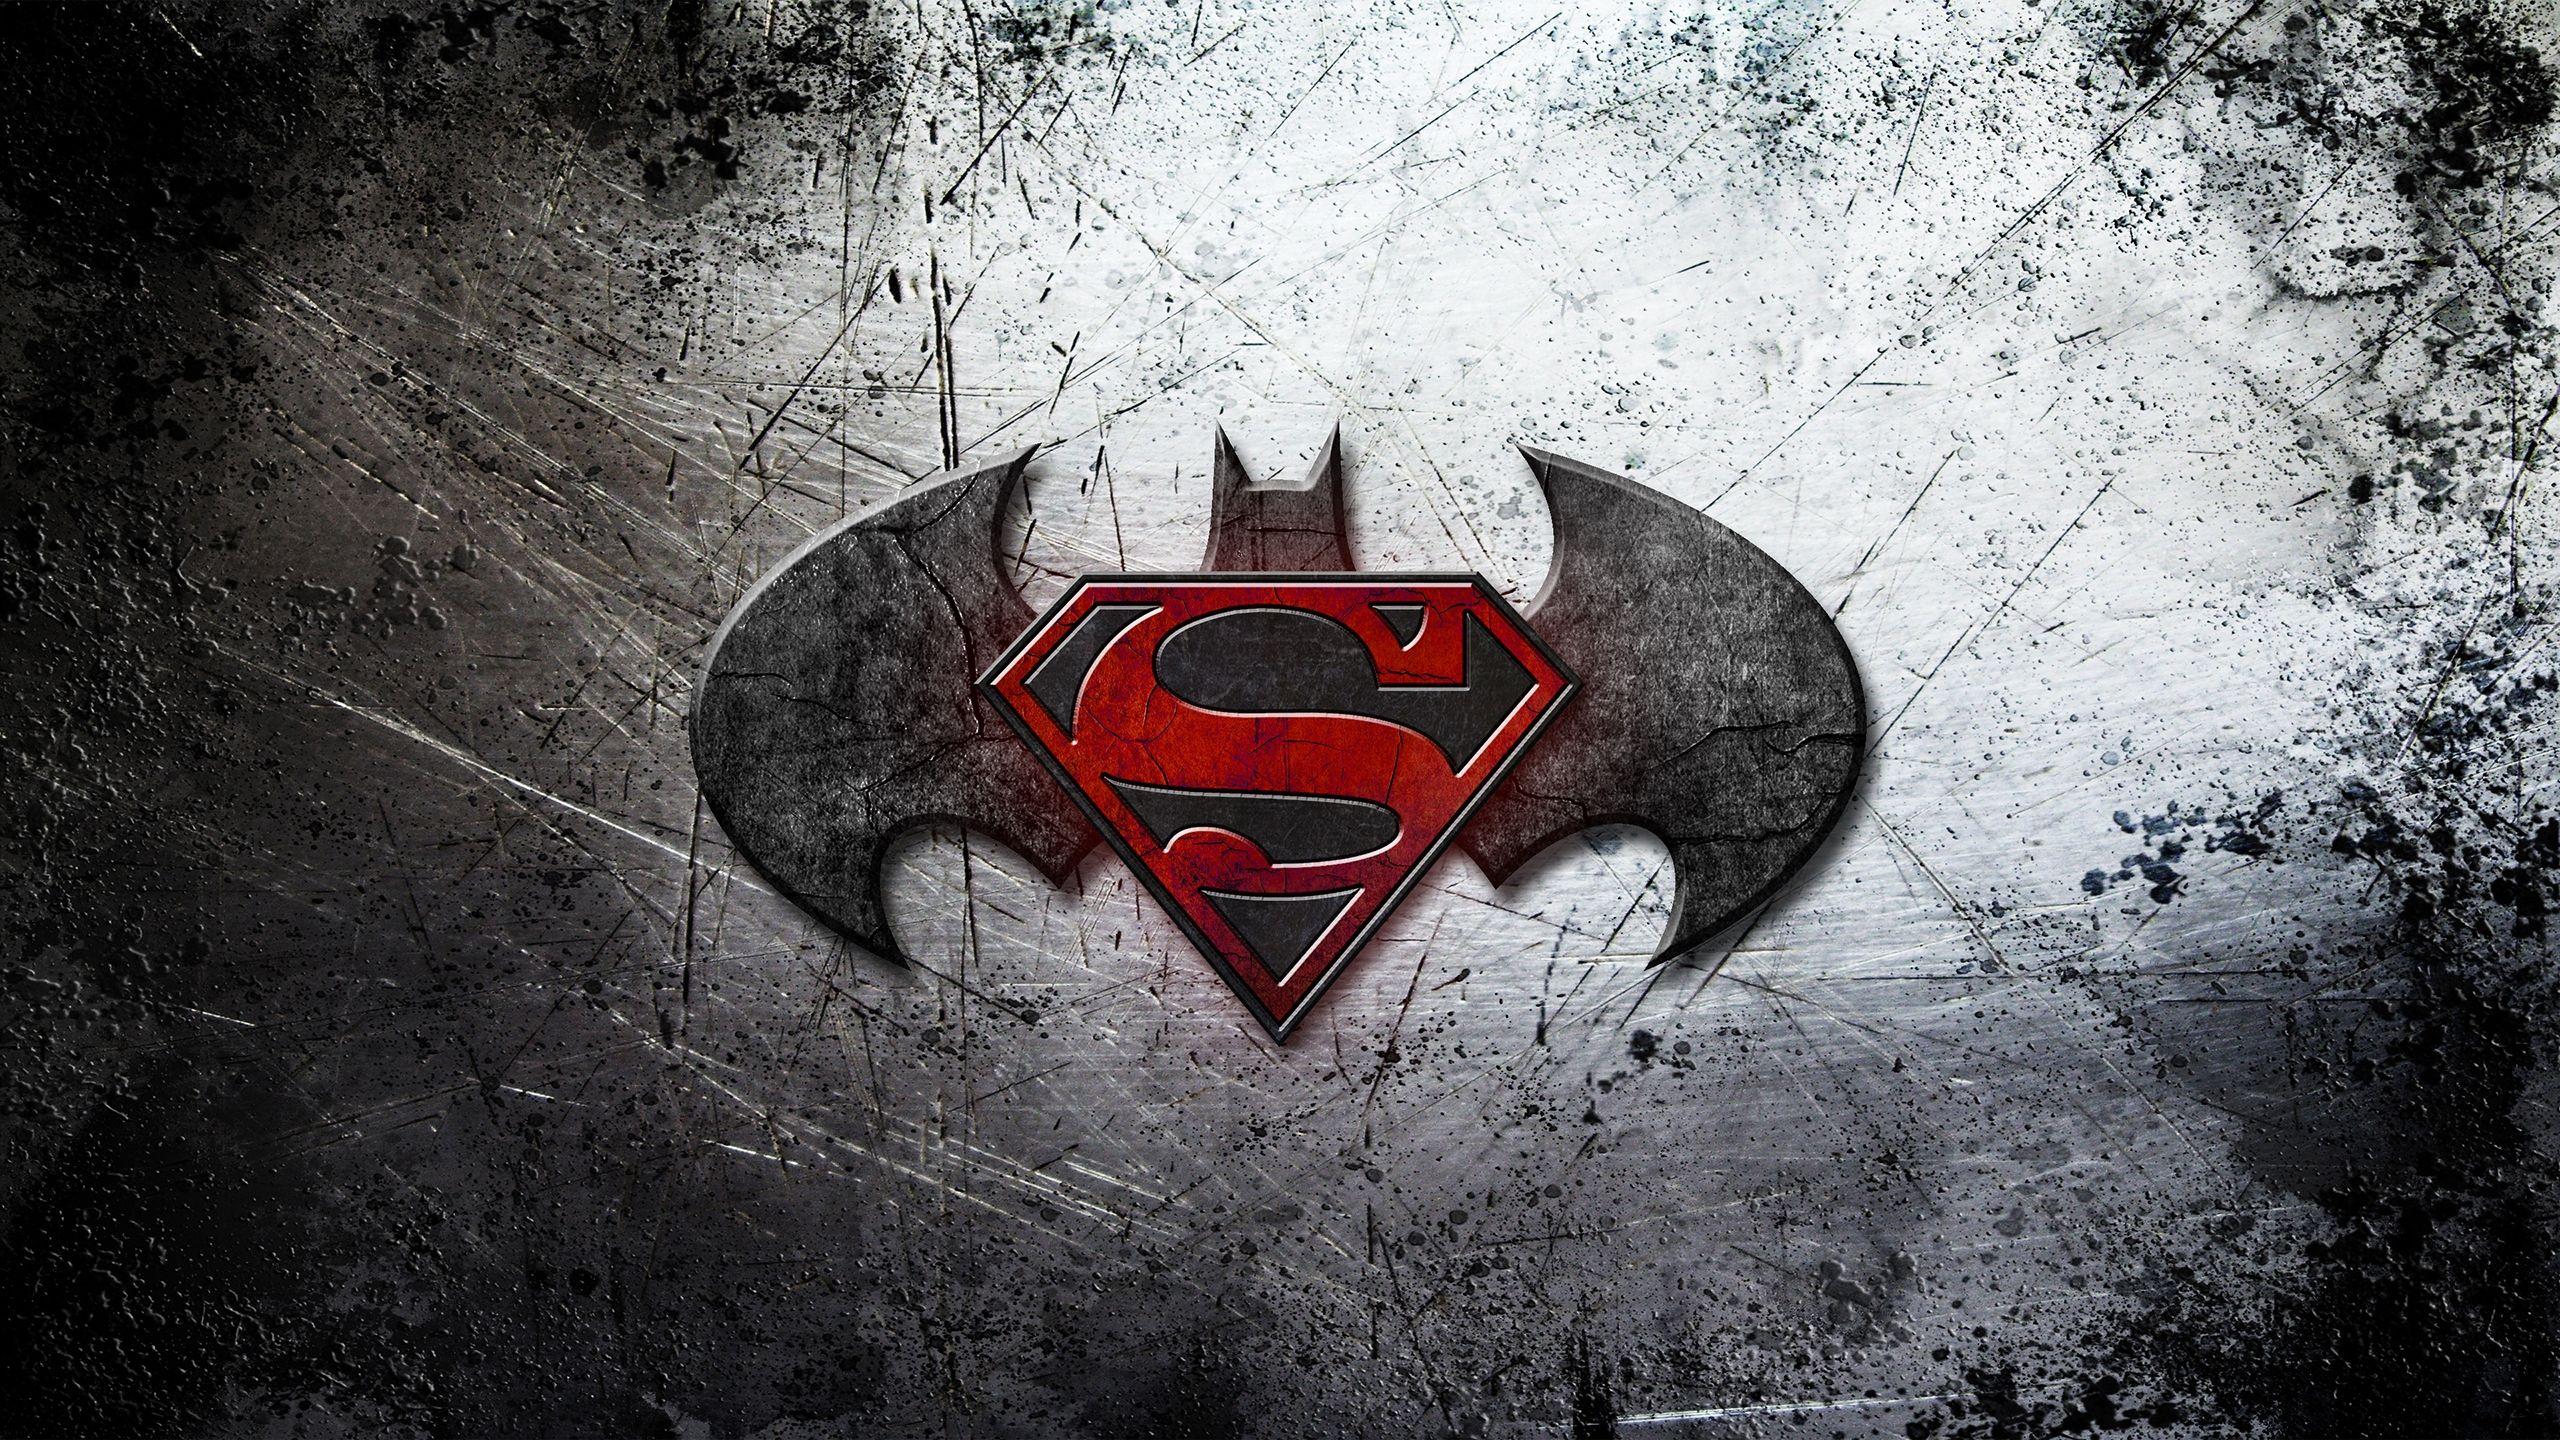 Batman vs Superman Logo Wallpaper. Heroes and Villains